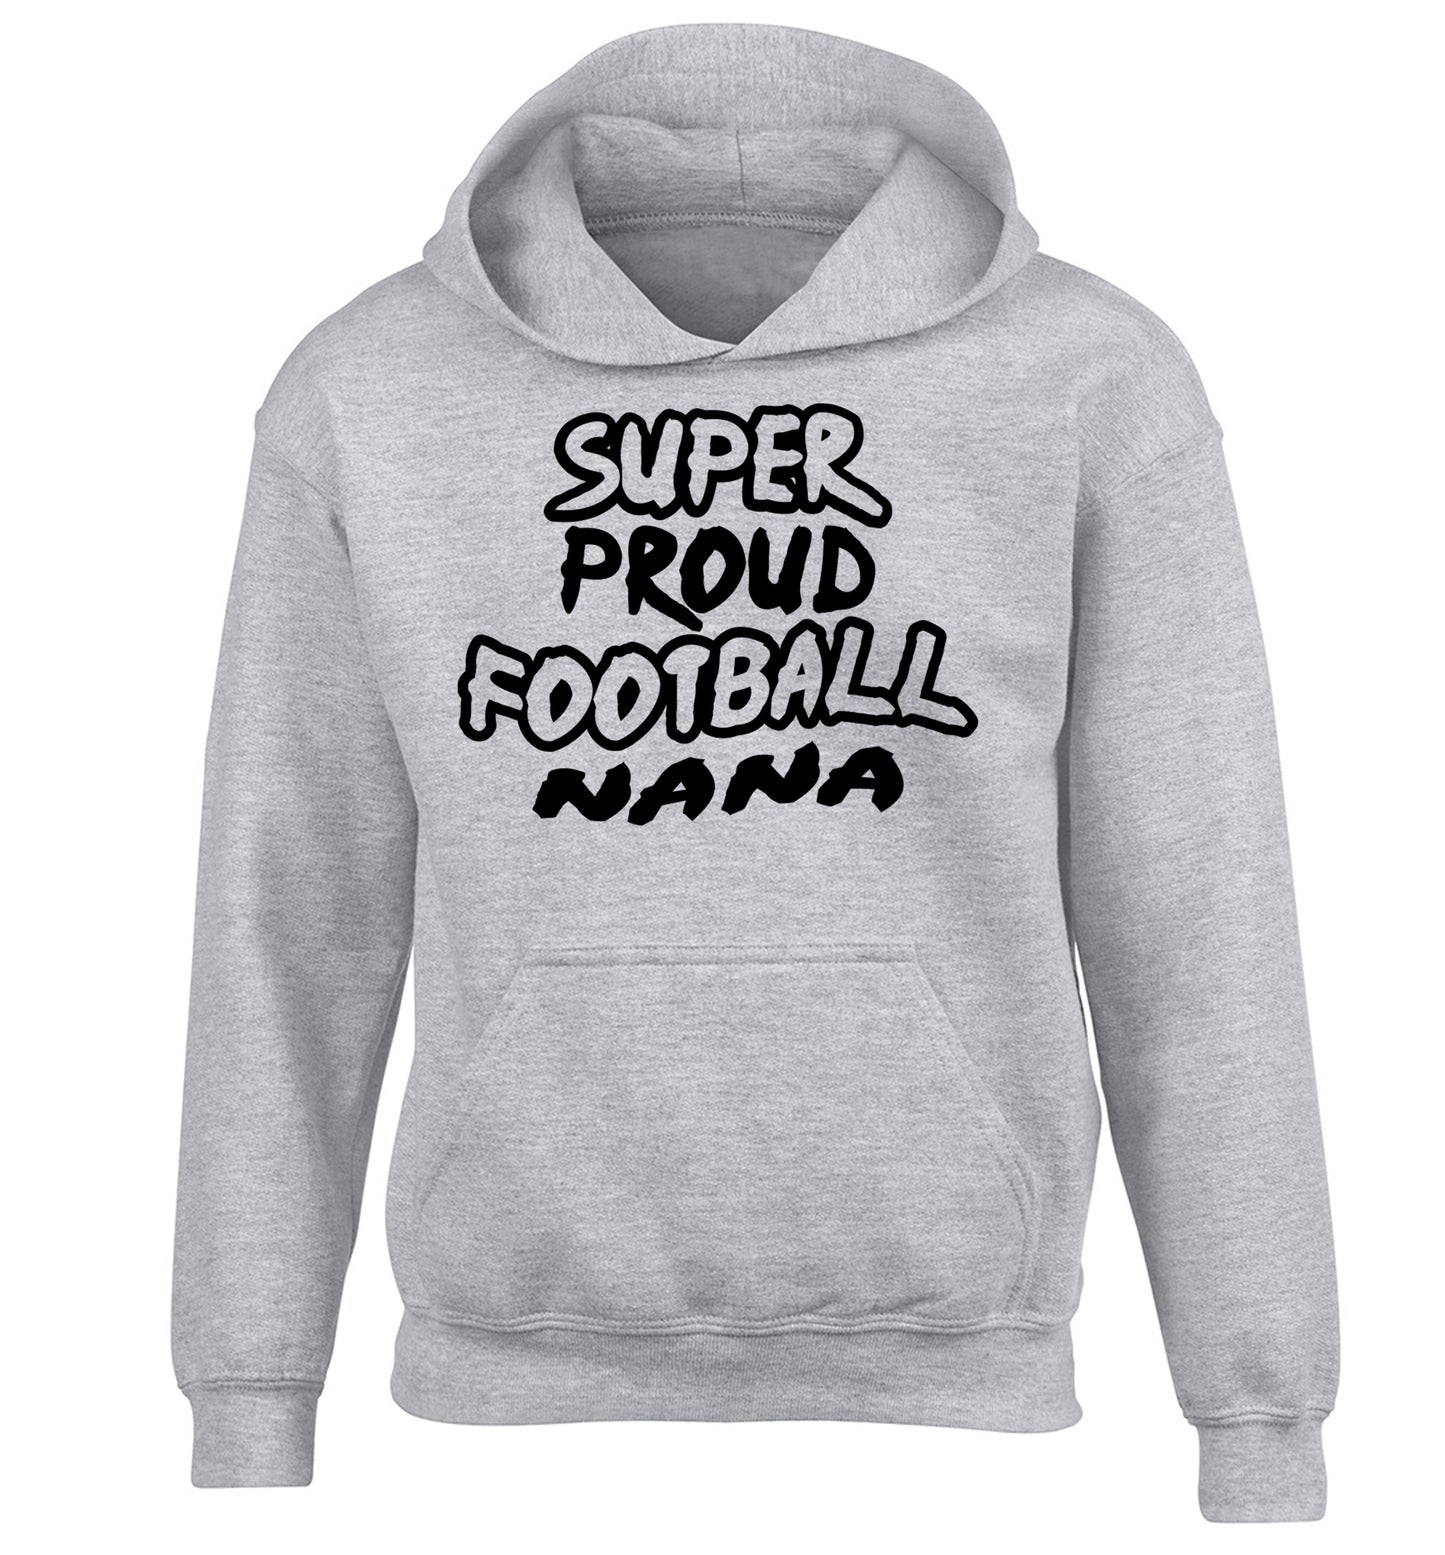 Super proud football nana children's grey hoodie 12-14 Years